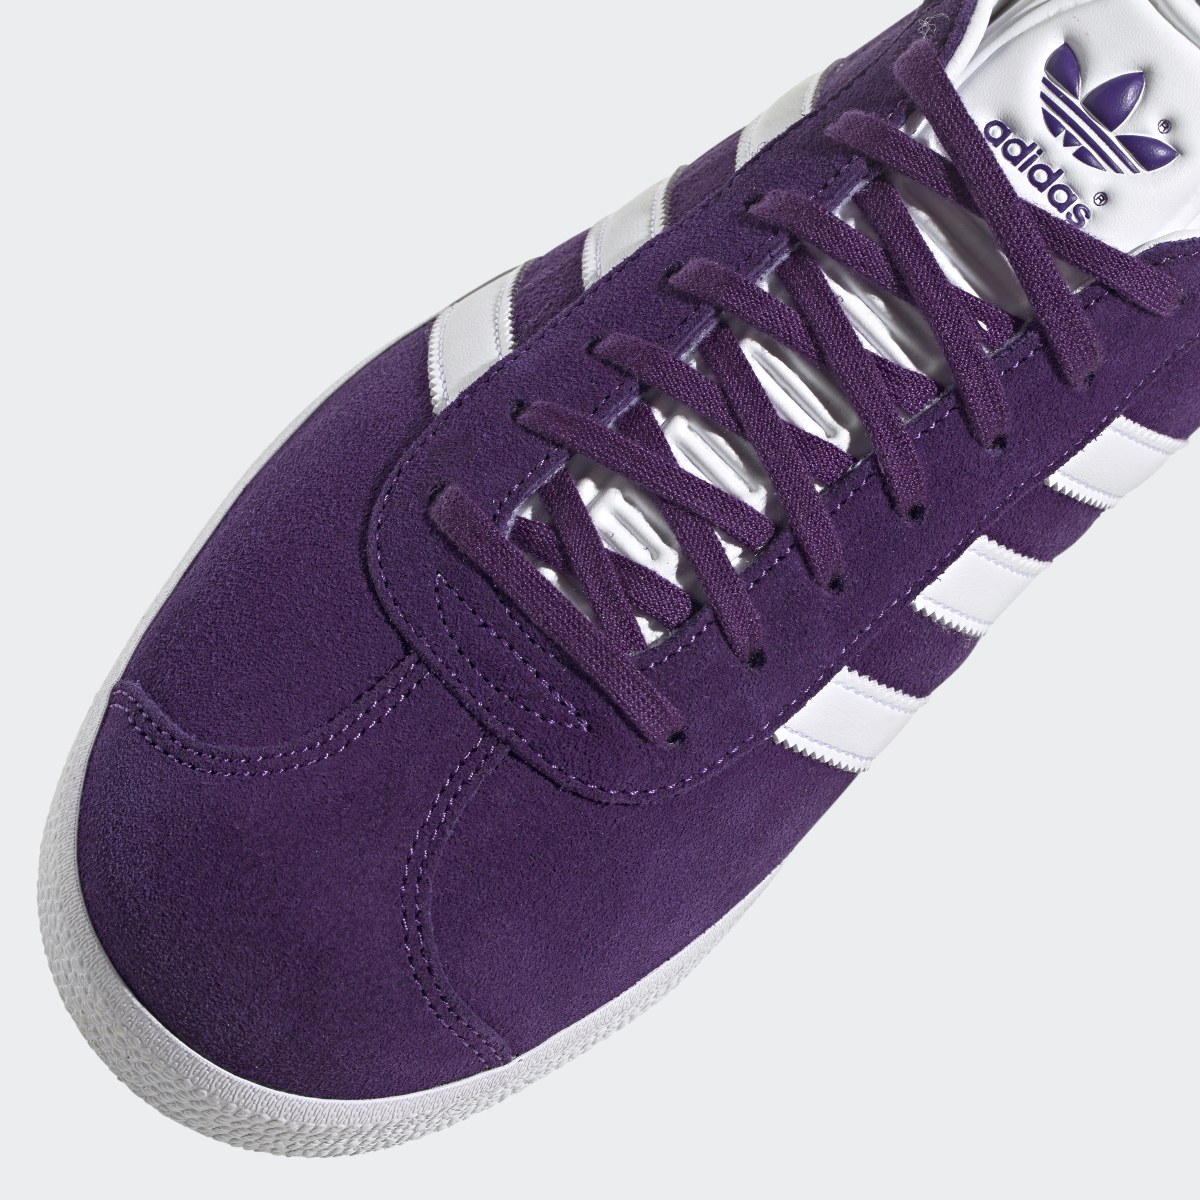 Adidas Gazelle Shoes. 9